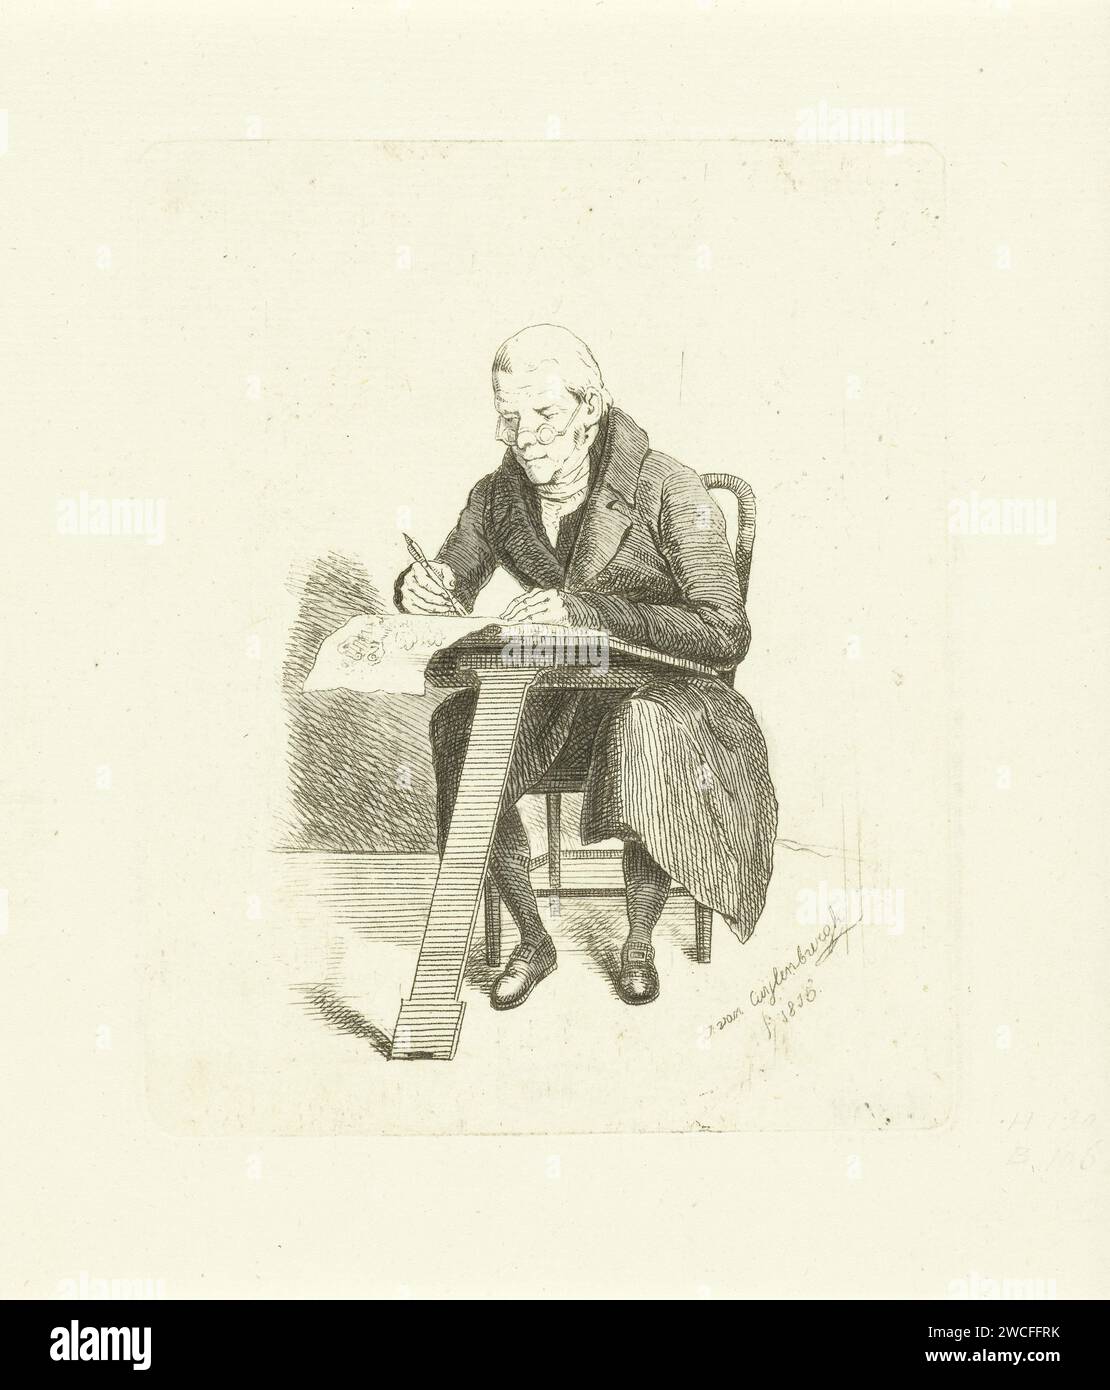 Disegnatore, Johannes van Cuylenburgh, 1815 stampa olandese occhiali da vista con incisione in carta, occhiali. disegnatore al lavoro Foto Stock